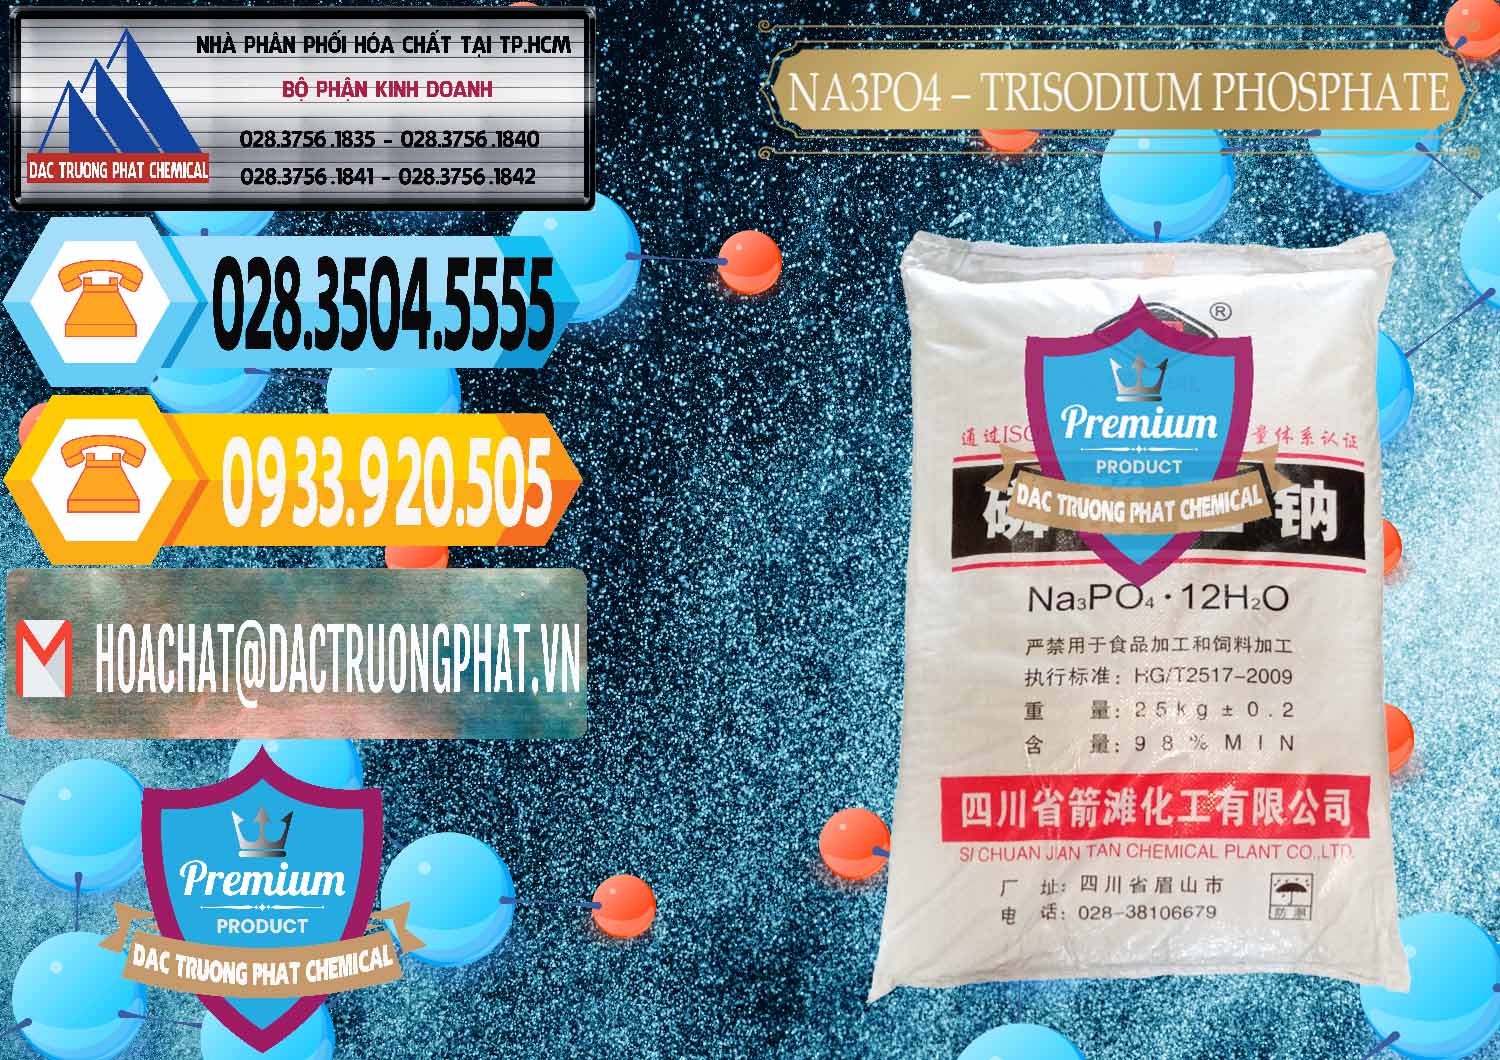 Cty chuyên bán và cung ứng Na3PO4 – Trisodium Phosphate Trung Quốc China JT - 0102 - Nhà cung cấp và phân phối hóa chất tại TP.HCM - hoachattayrua.net